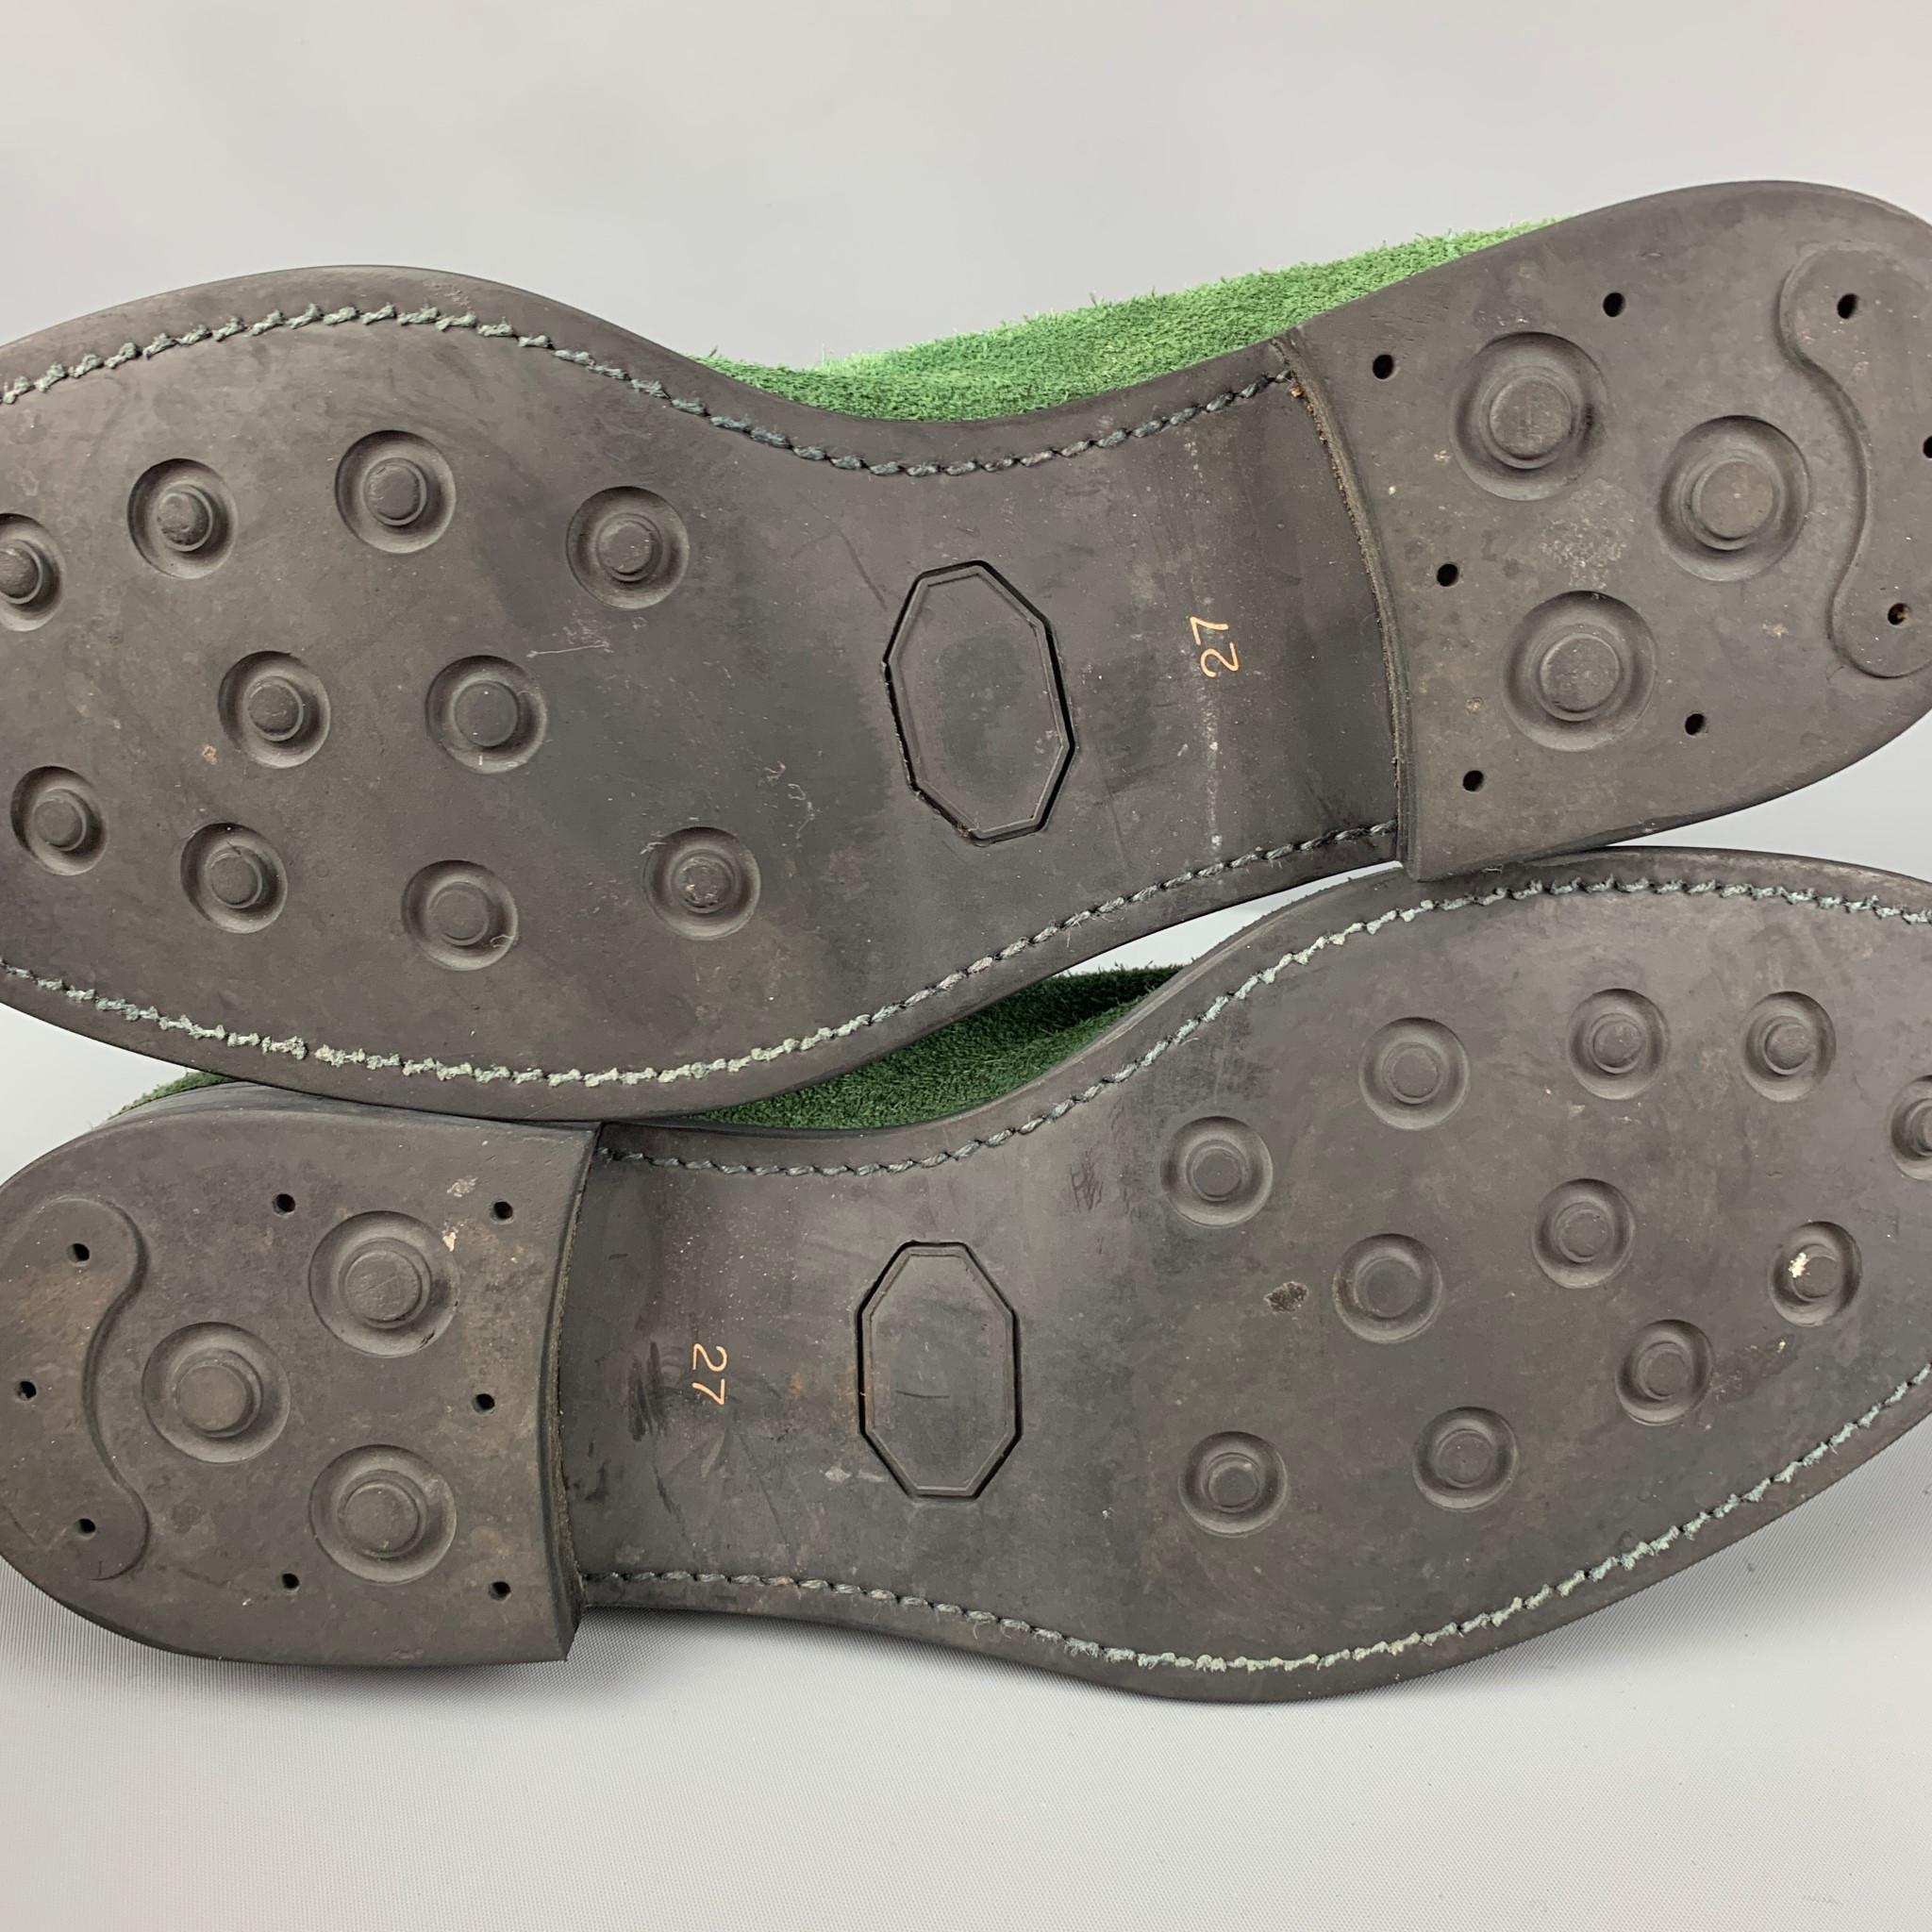 COMME des GARCONS HOMME PLUS Size 10 Green Black Suede Ankle Boots 3